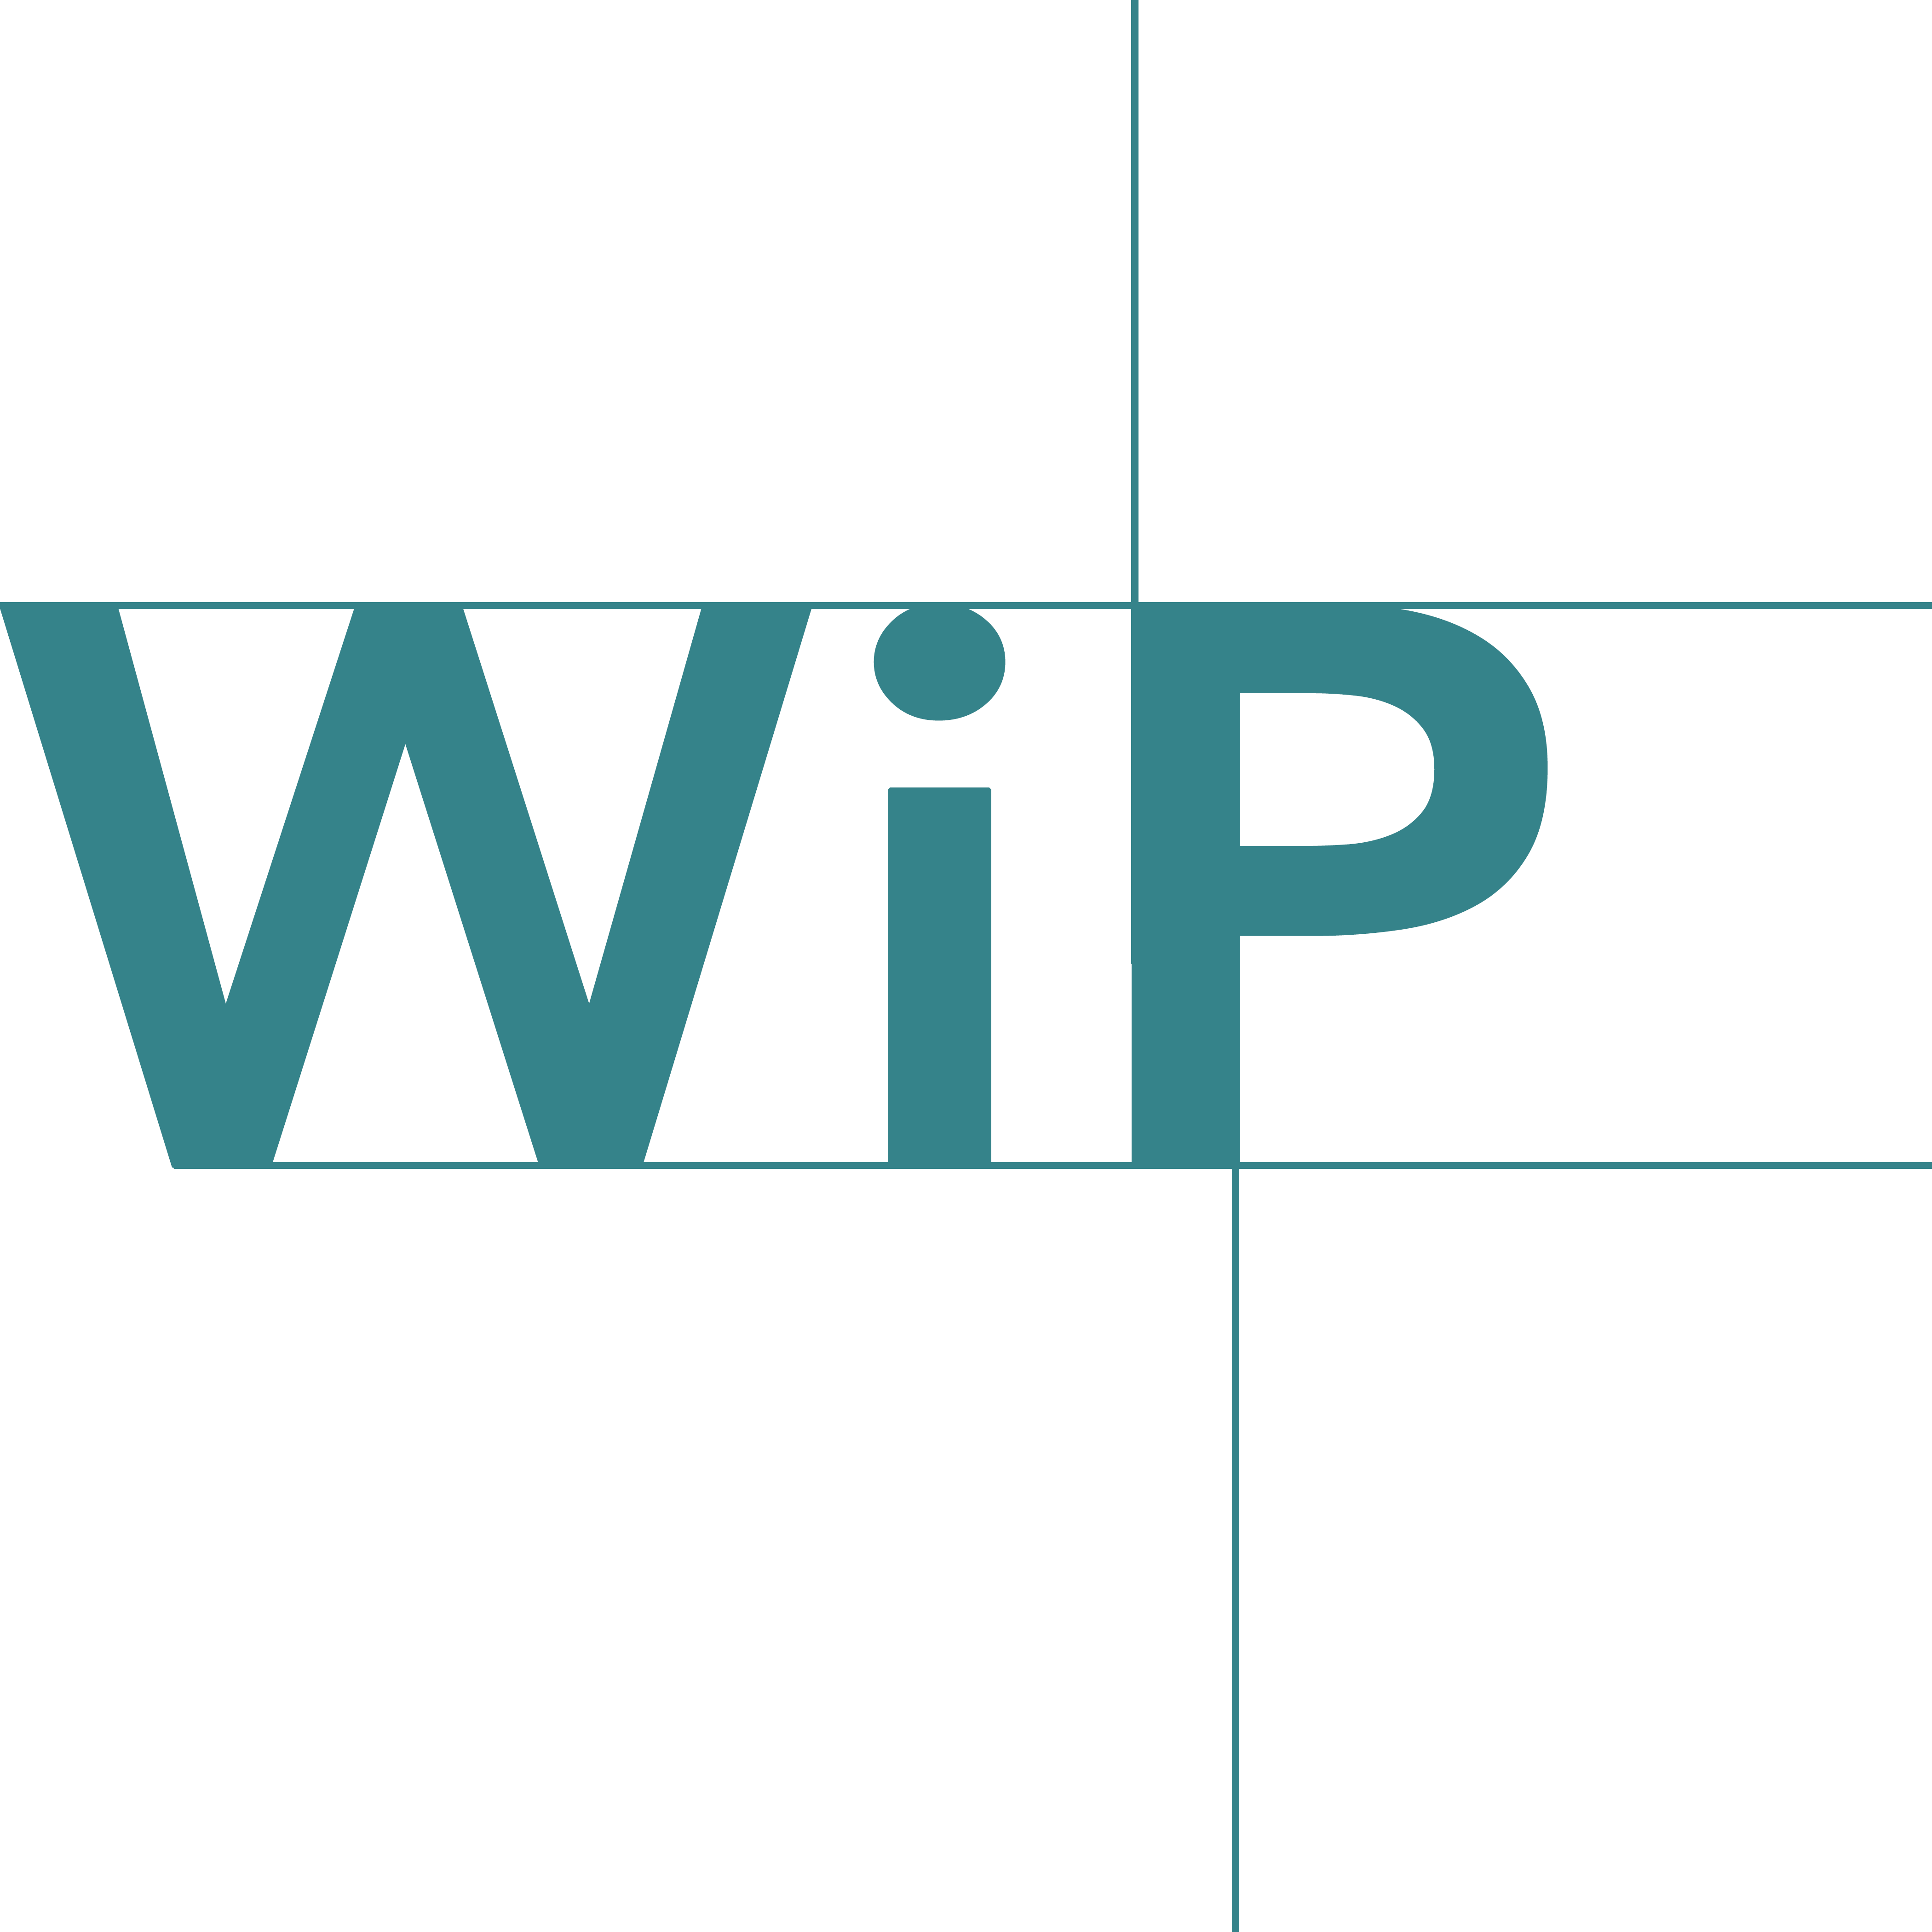 WiP | Work in Progress